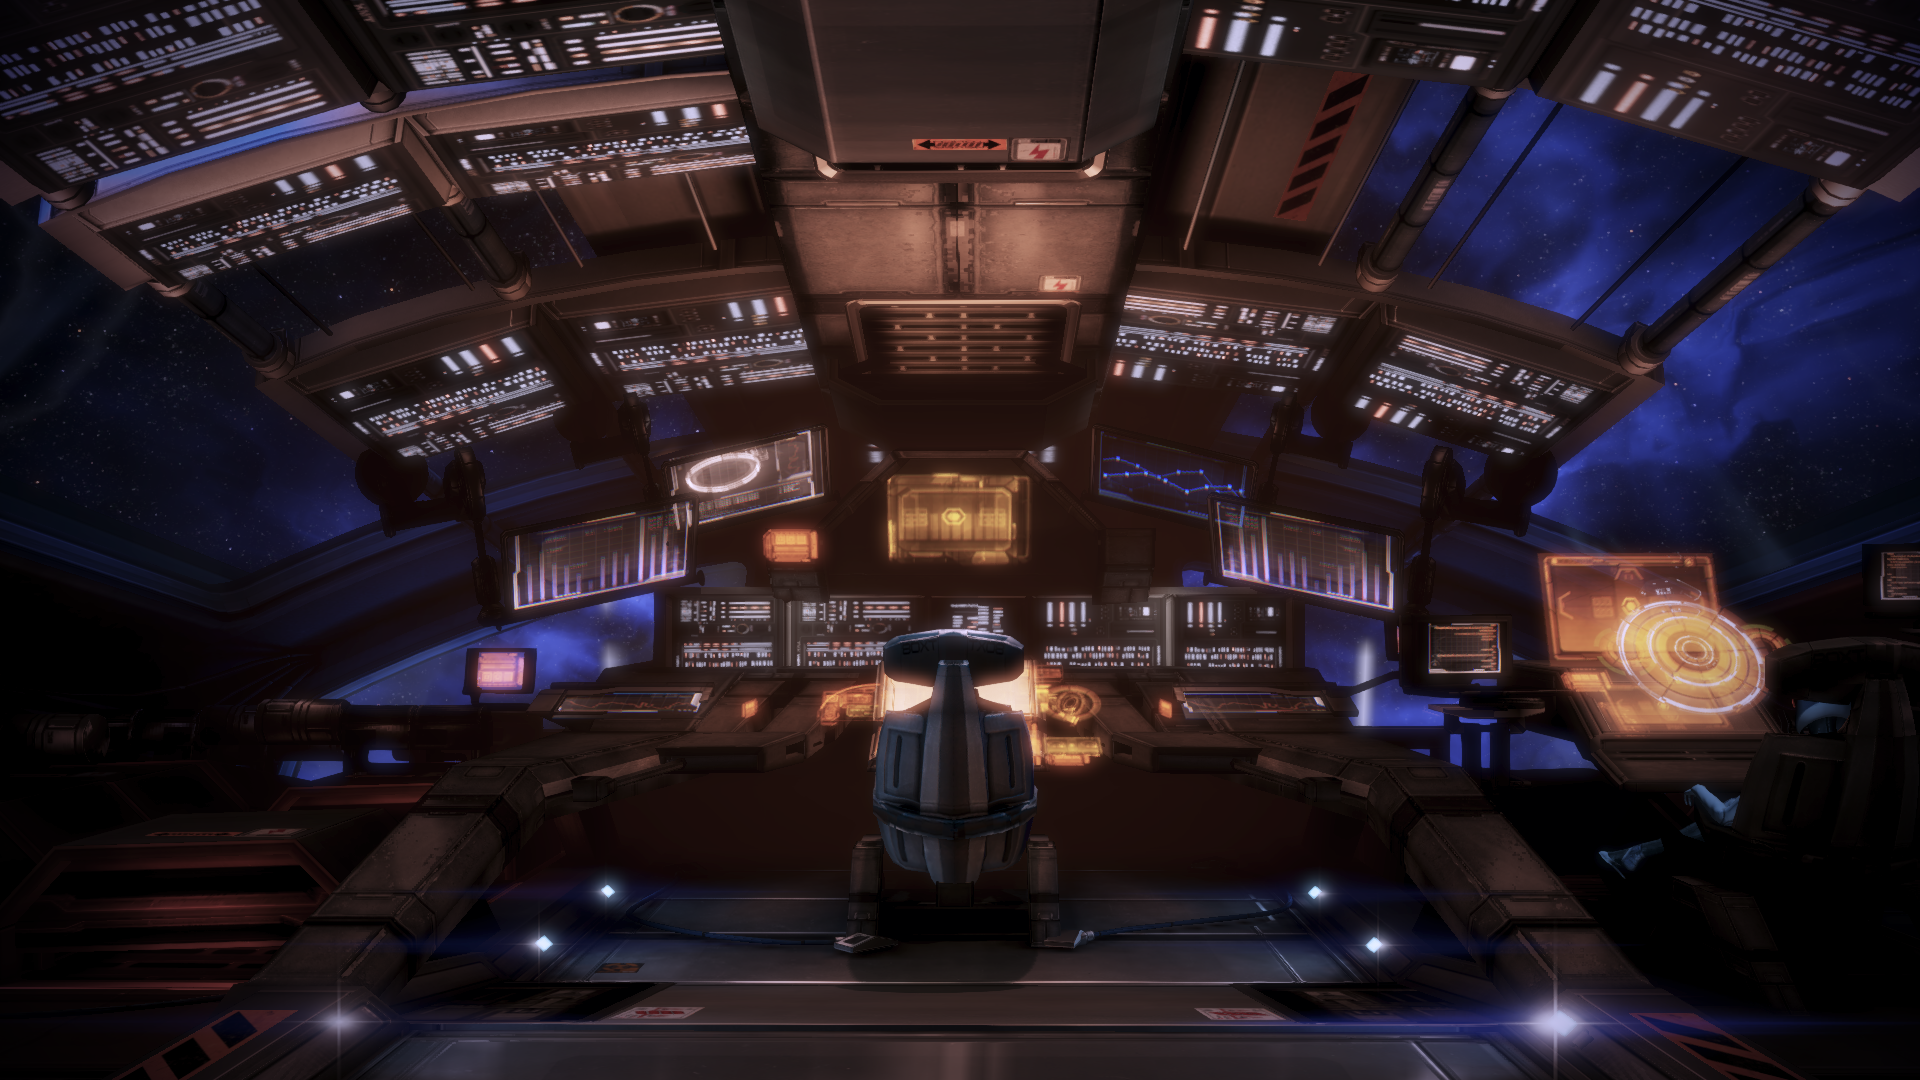 Mass Effect Normandy Interior - HD Wallpaper 